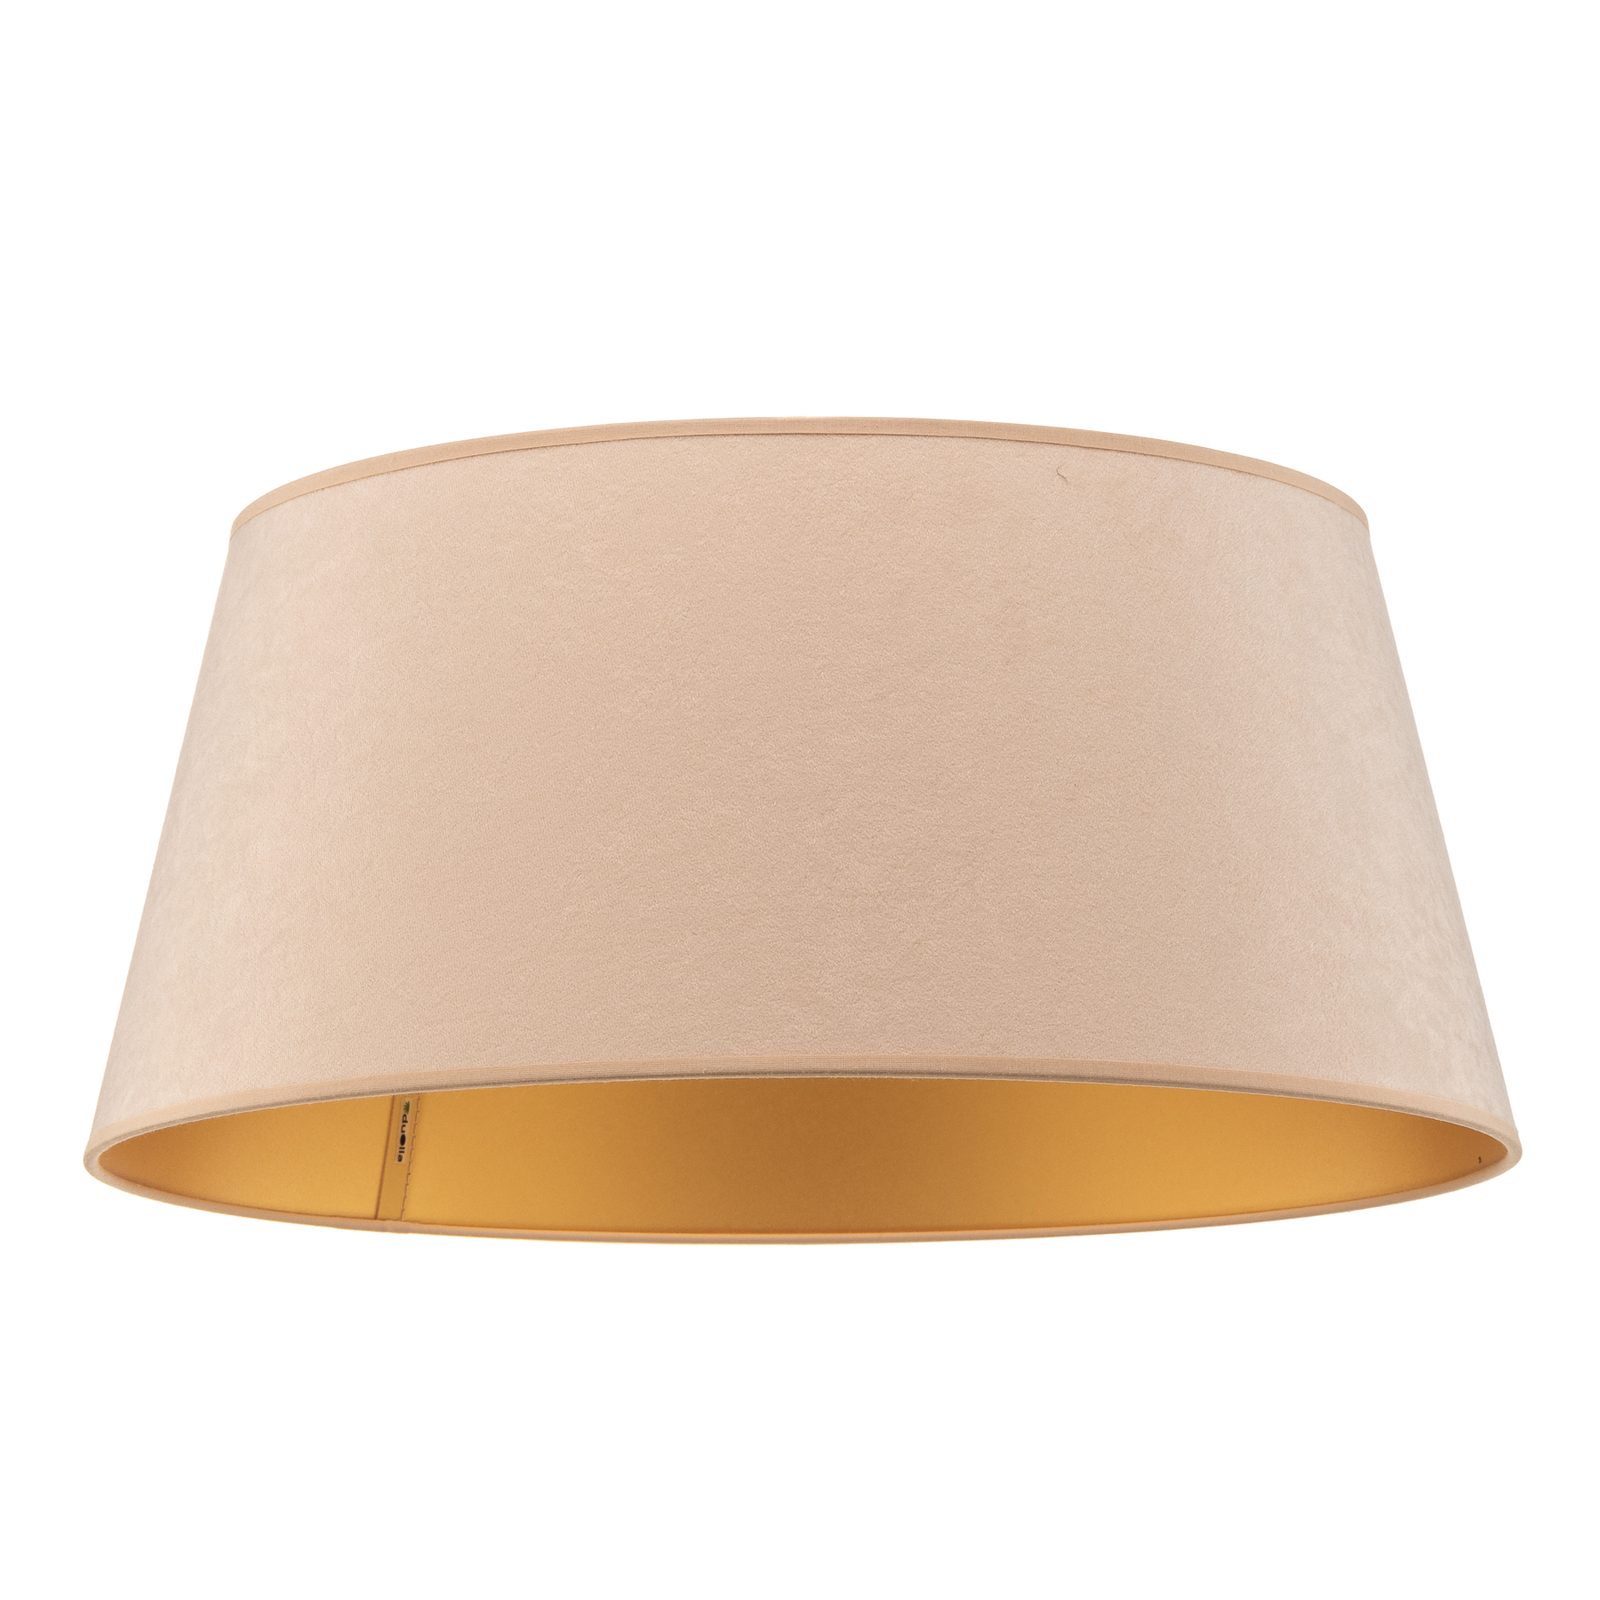 Cone lámpaernyő 22,5 cm magas, ekrü/arany